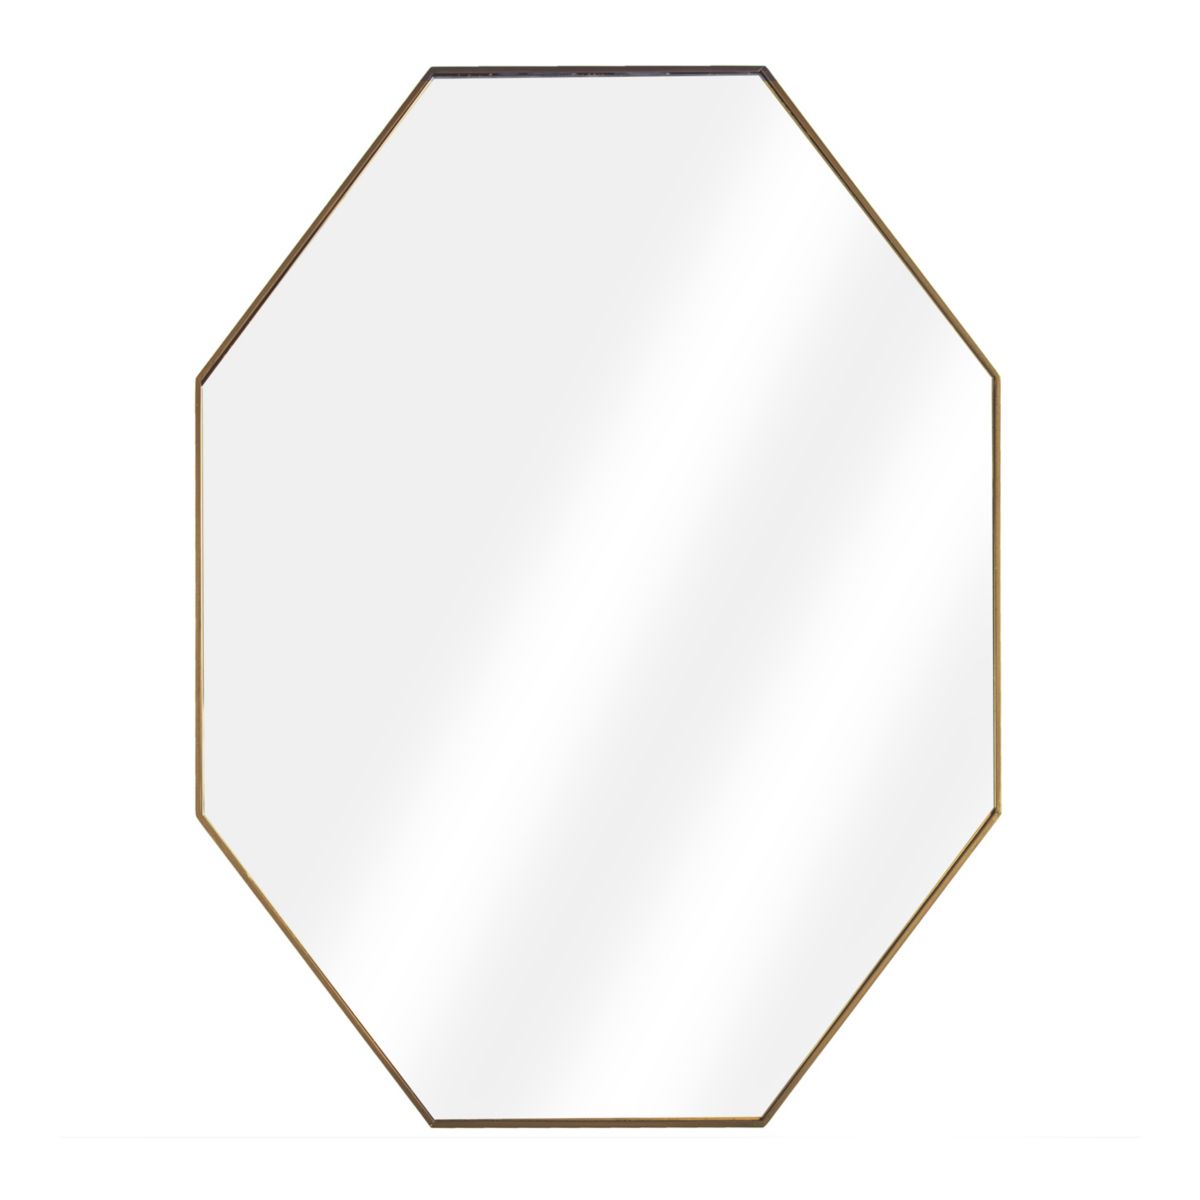 Восьмиугольное настенное зеркало в стиле американский арт-декор American Art Décor